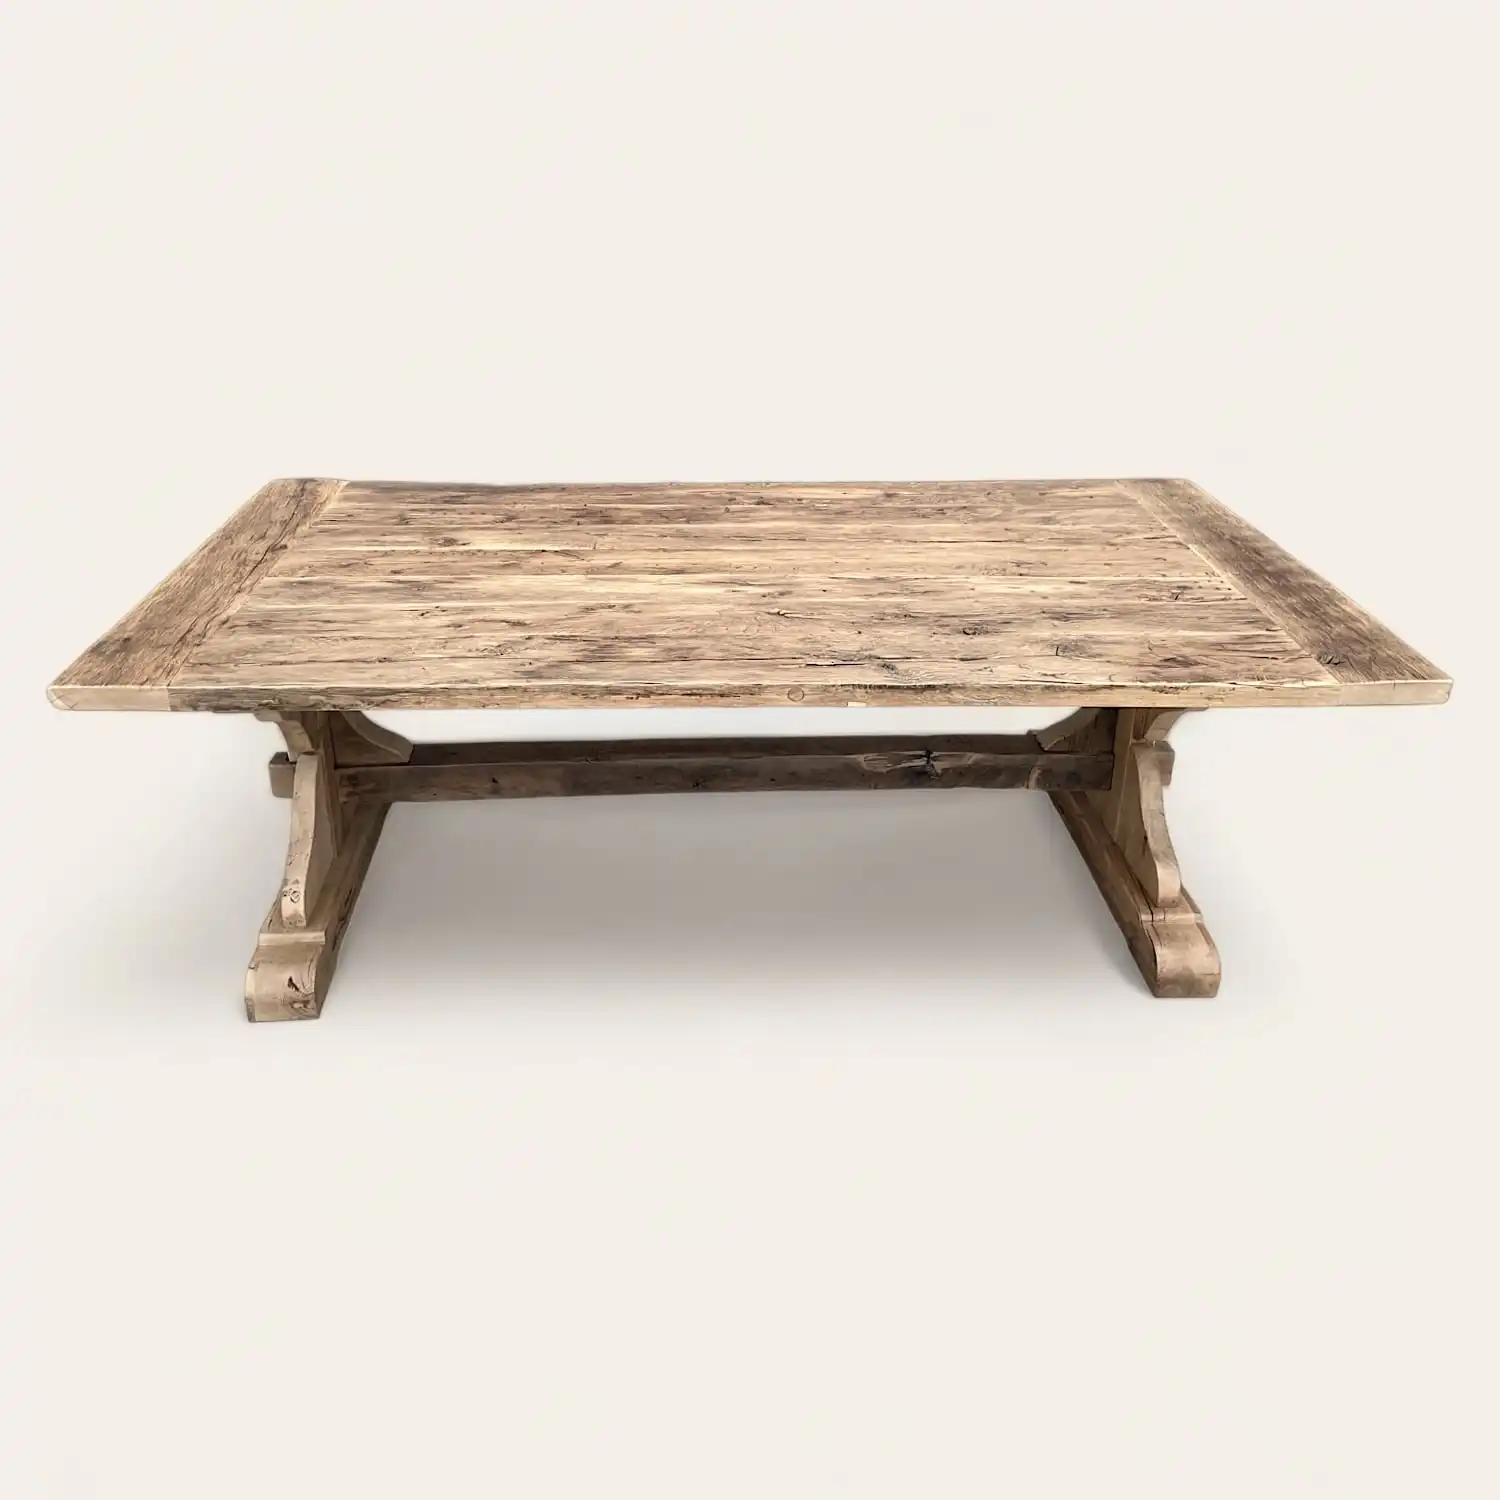  Une table basse rustique en bois avec une base en bois. 